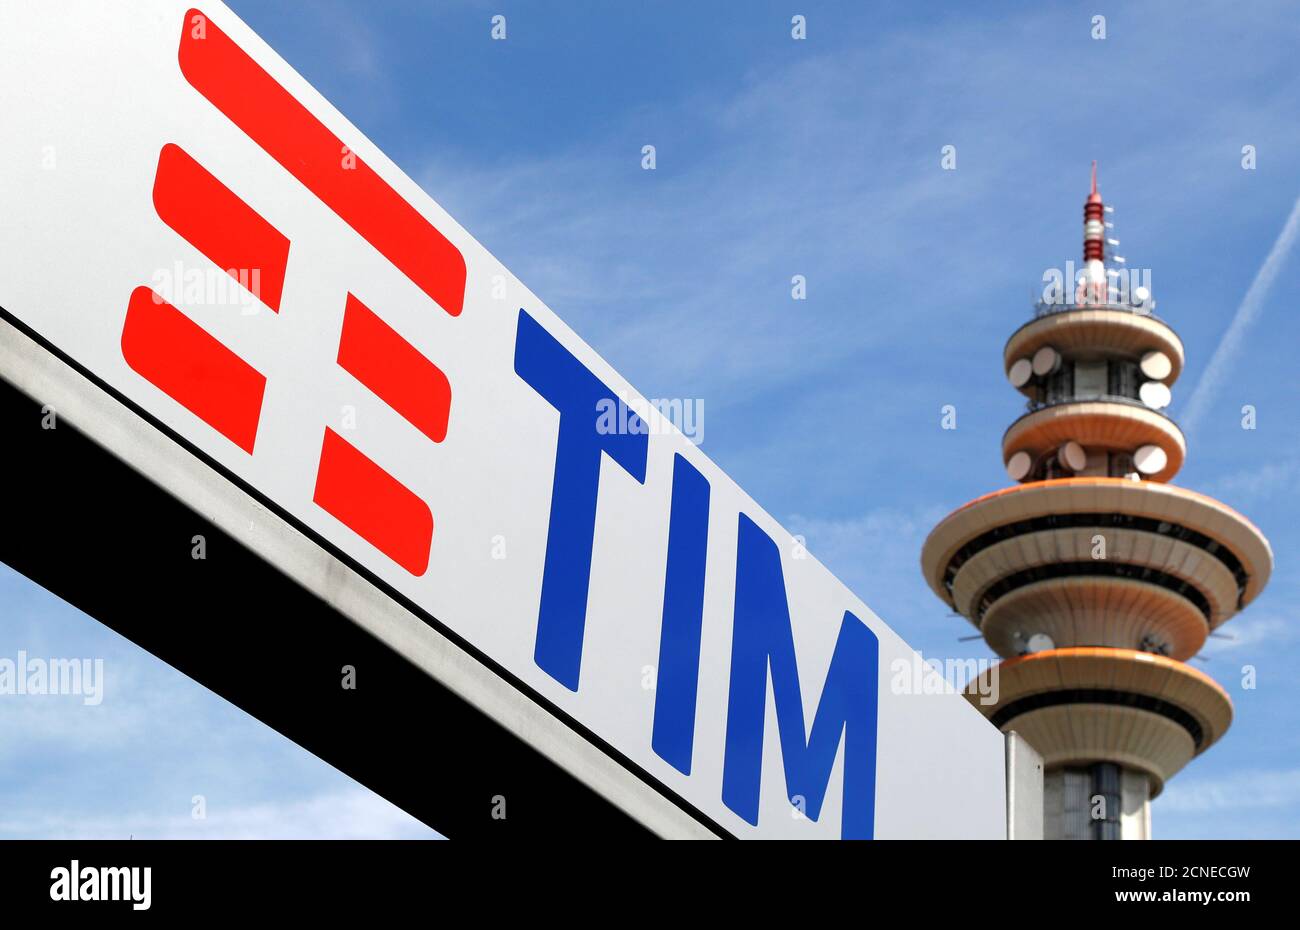 Telecom italia immagini e fotografie stock ad alta risoluzione - Alamy